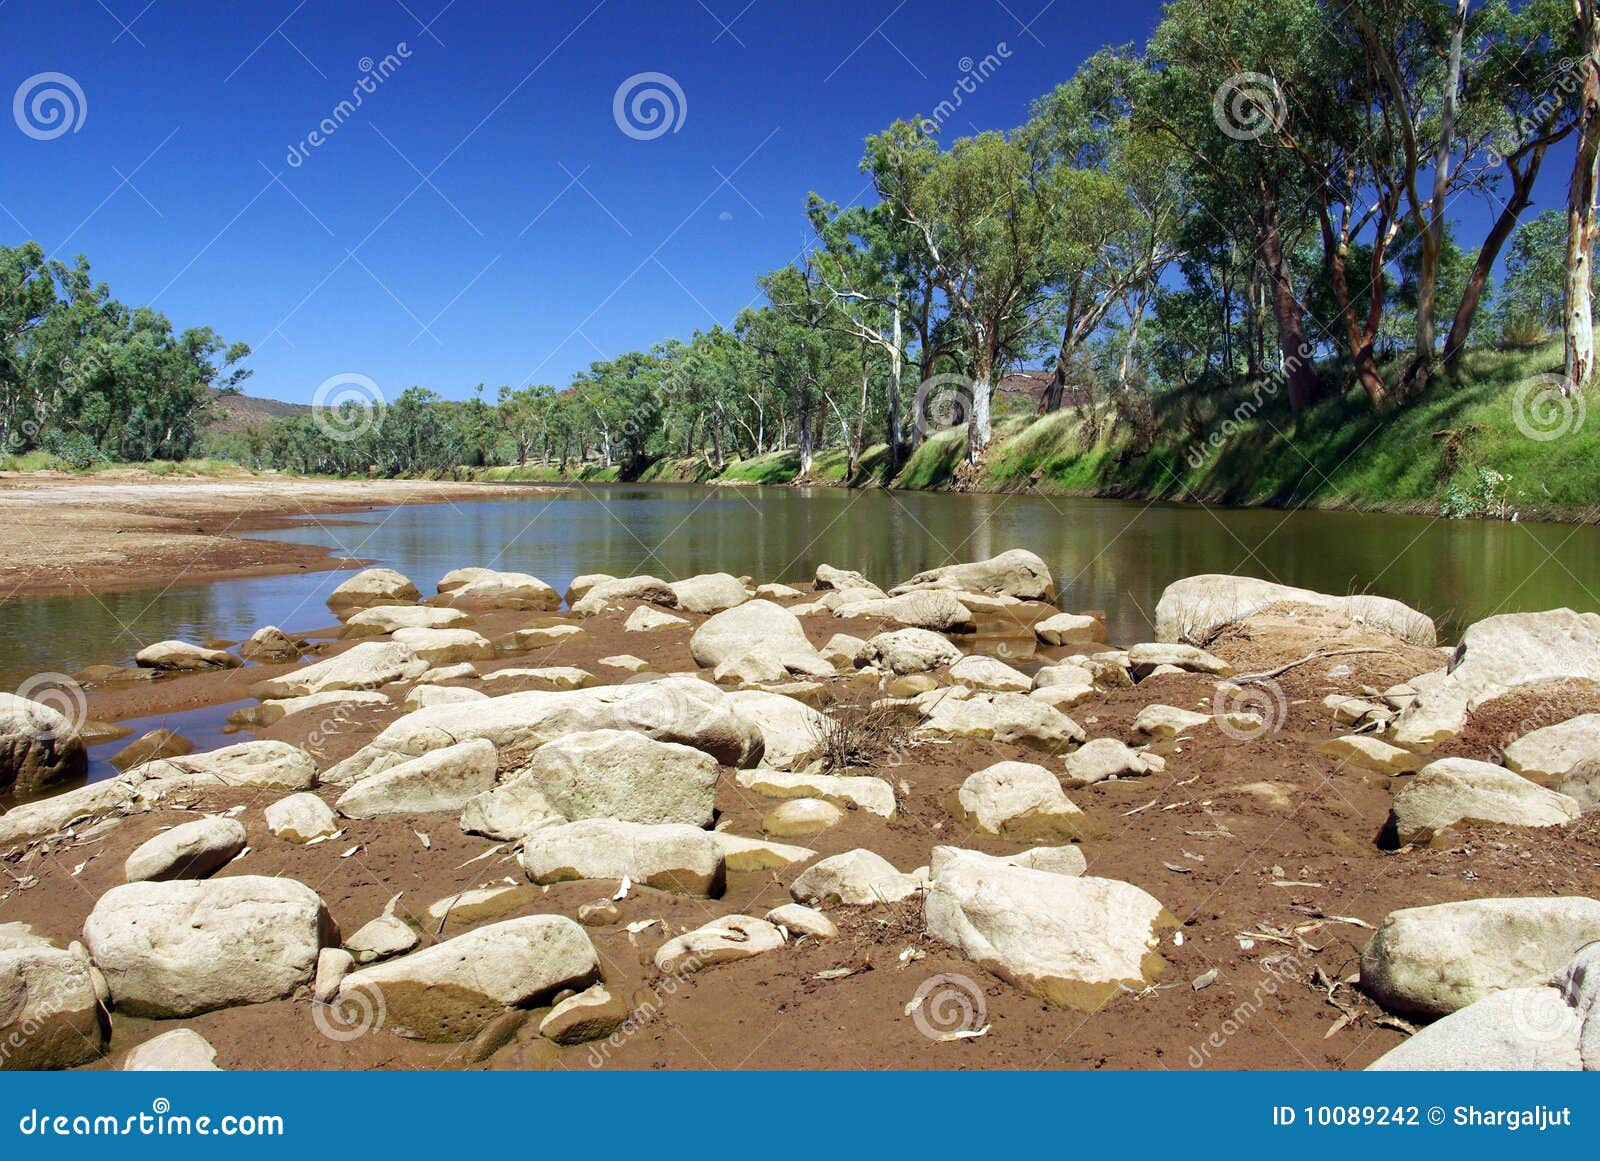 река finke Австралии стоковое фото. изображение насчитывающей естественно -  10089242